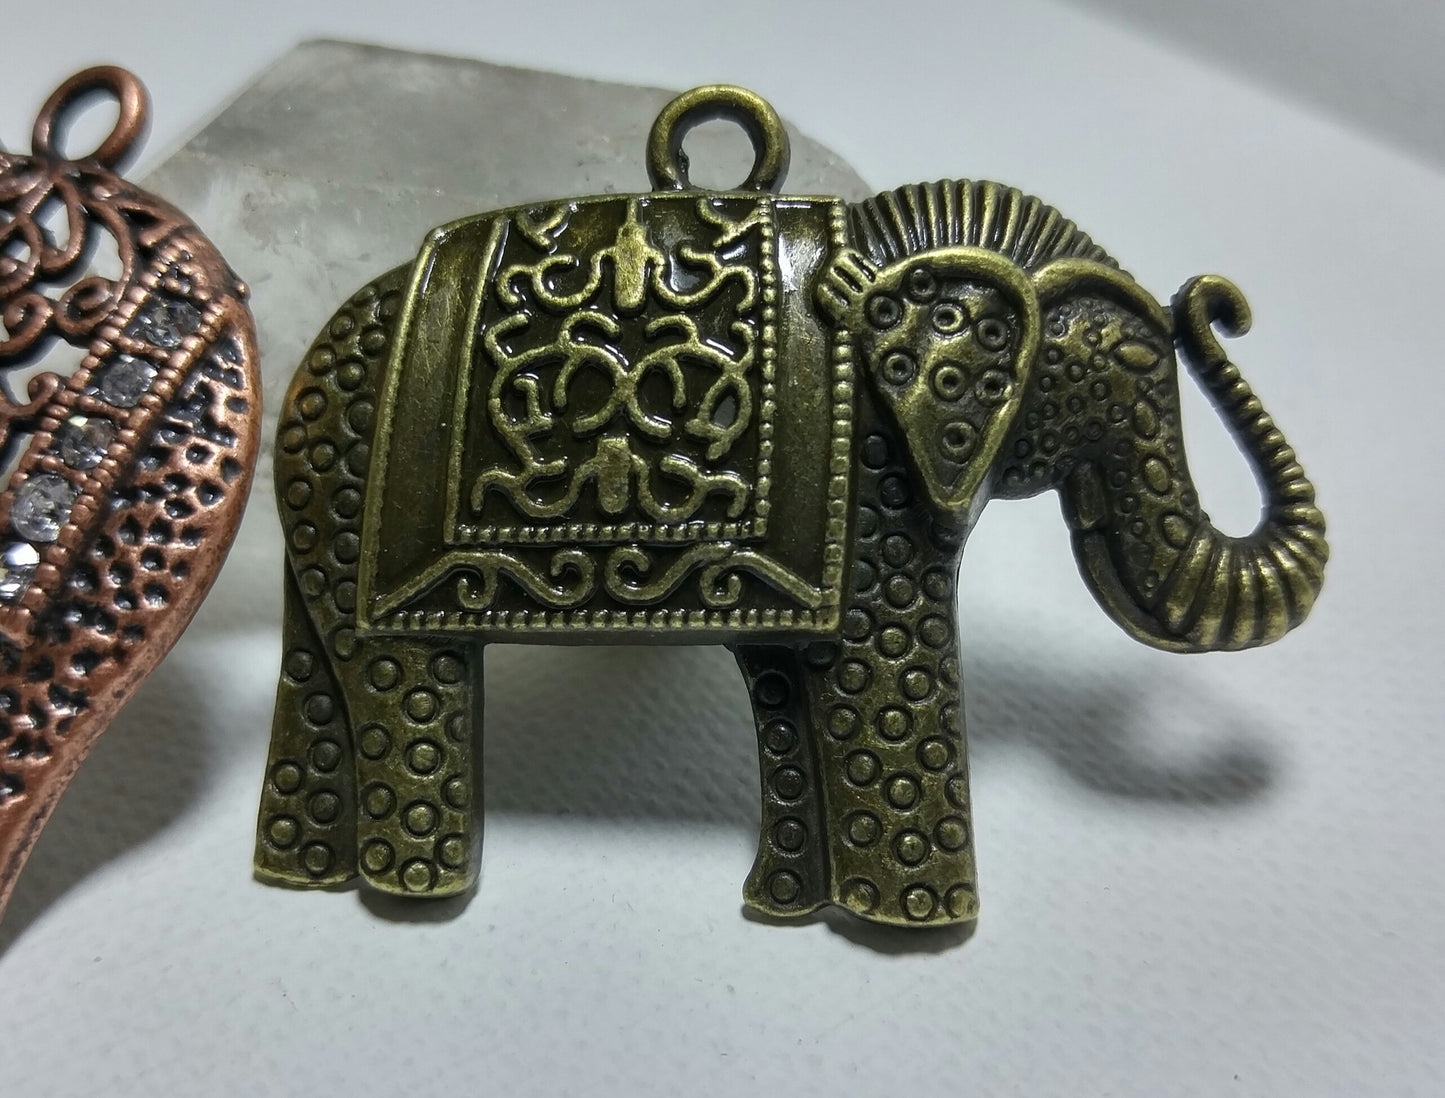 2 Fancy Elephant Pendants-lot 1